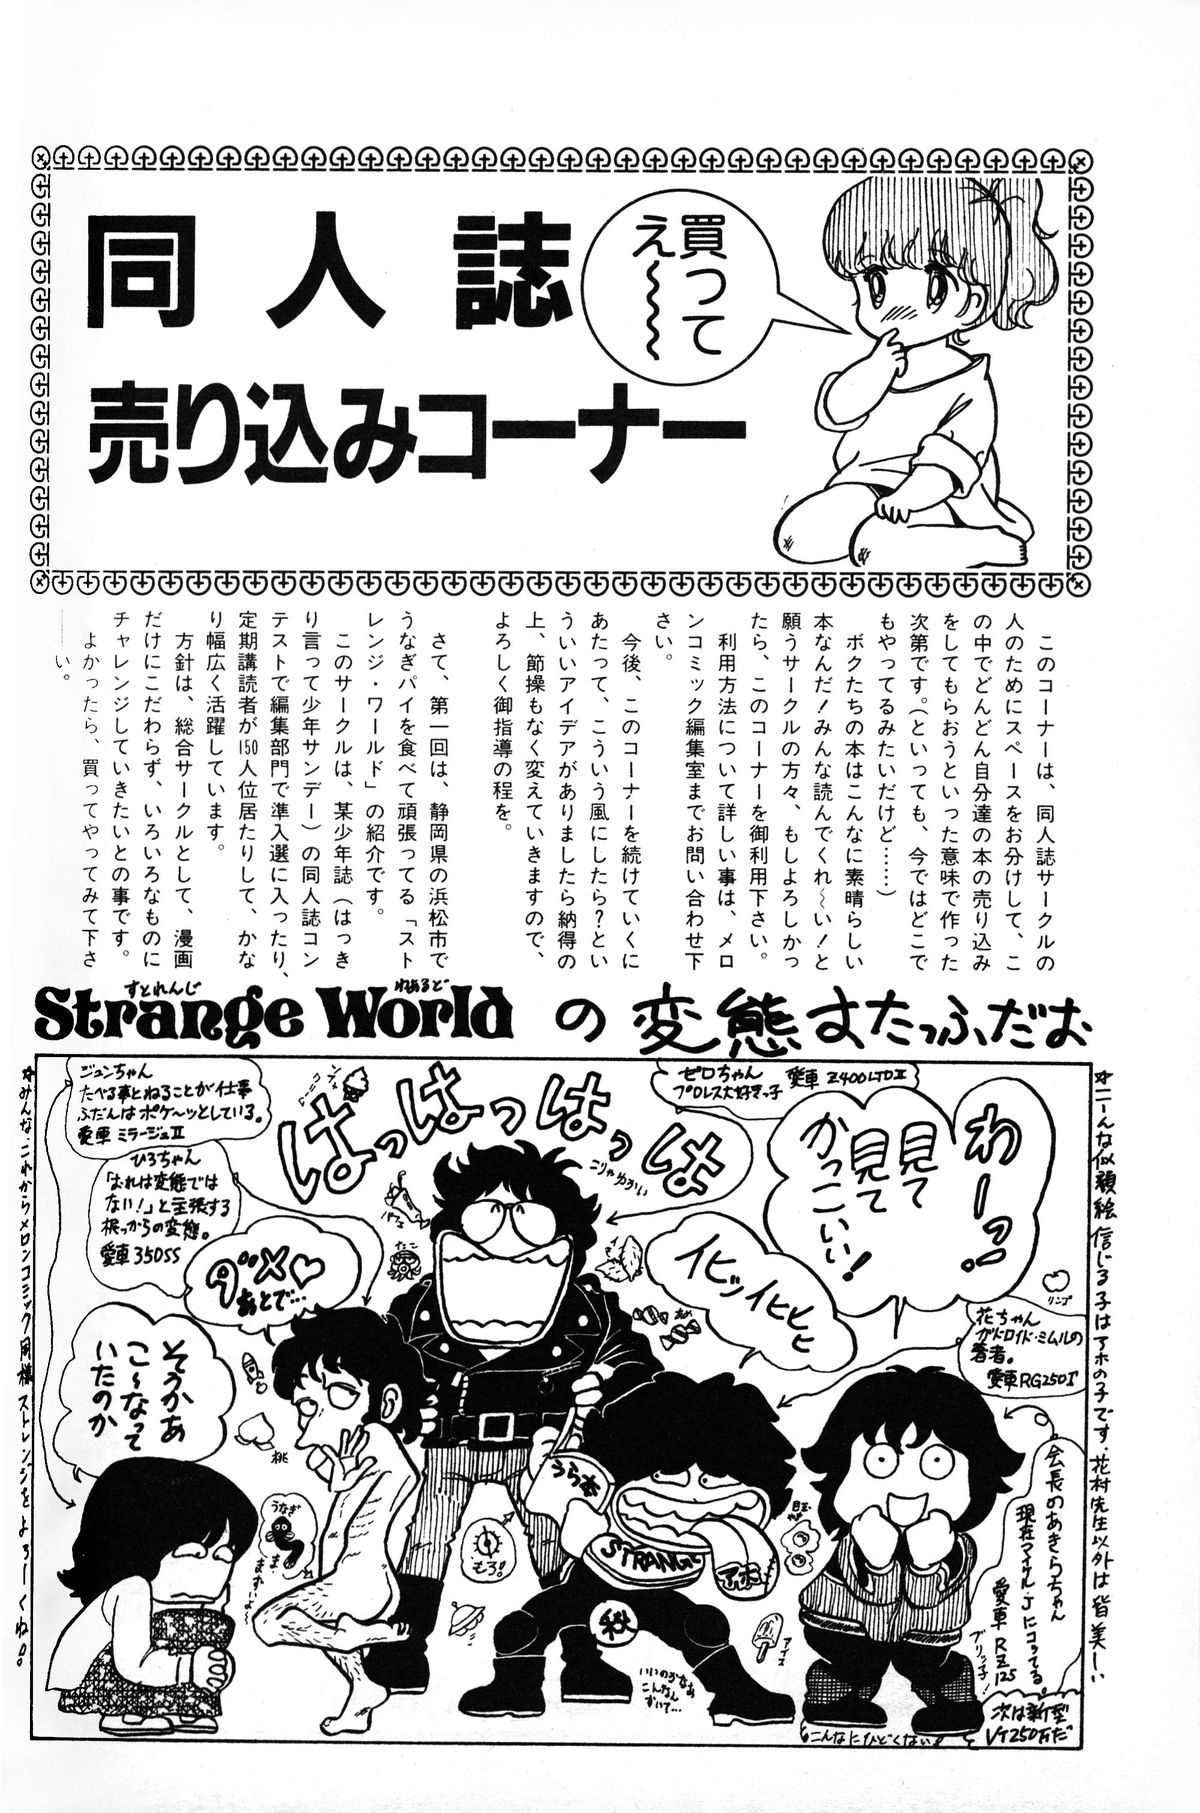 メロンコミックNo.01、メロンコミック昭和59年6月号